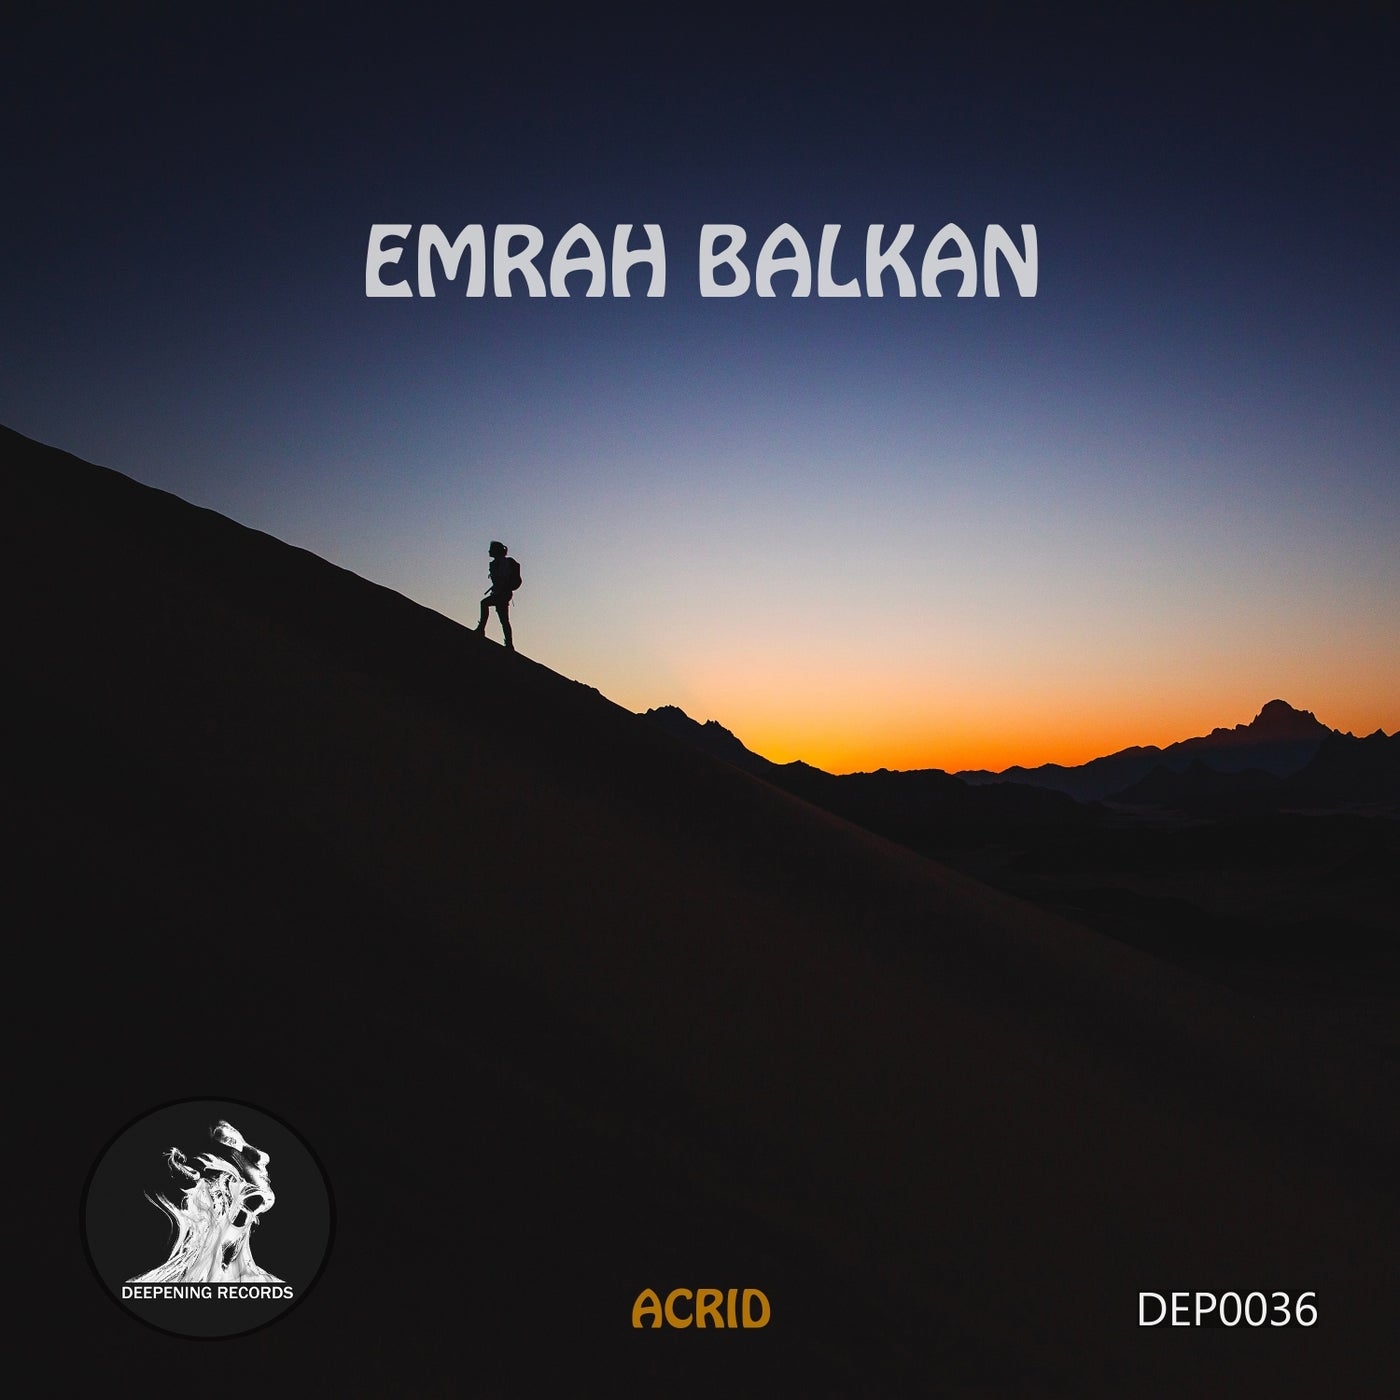 Emrah Balkan - Acrid (Original Mix)